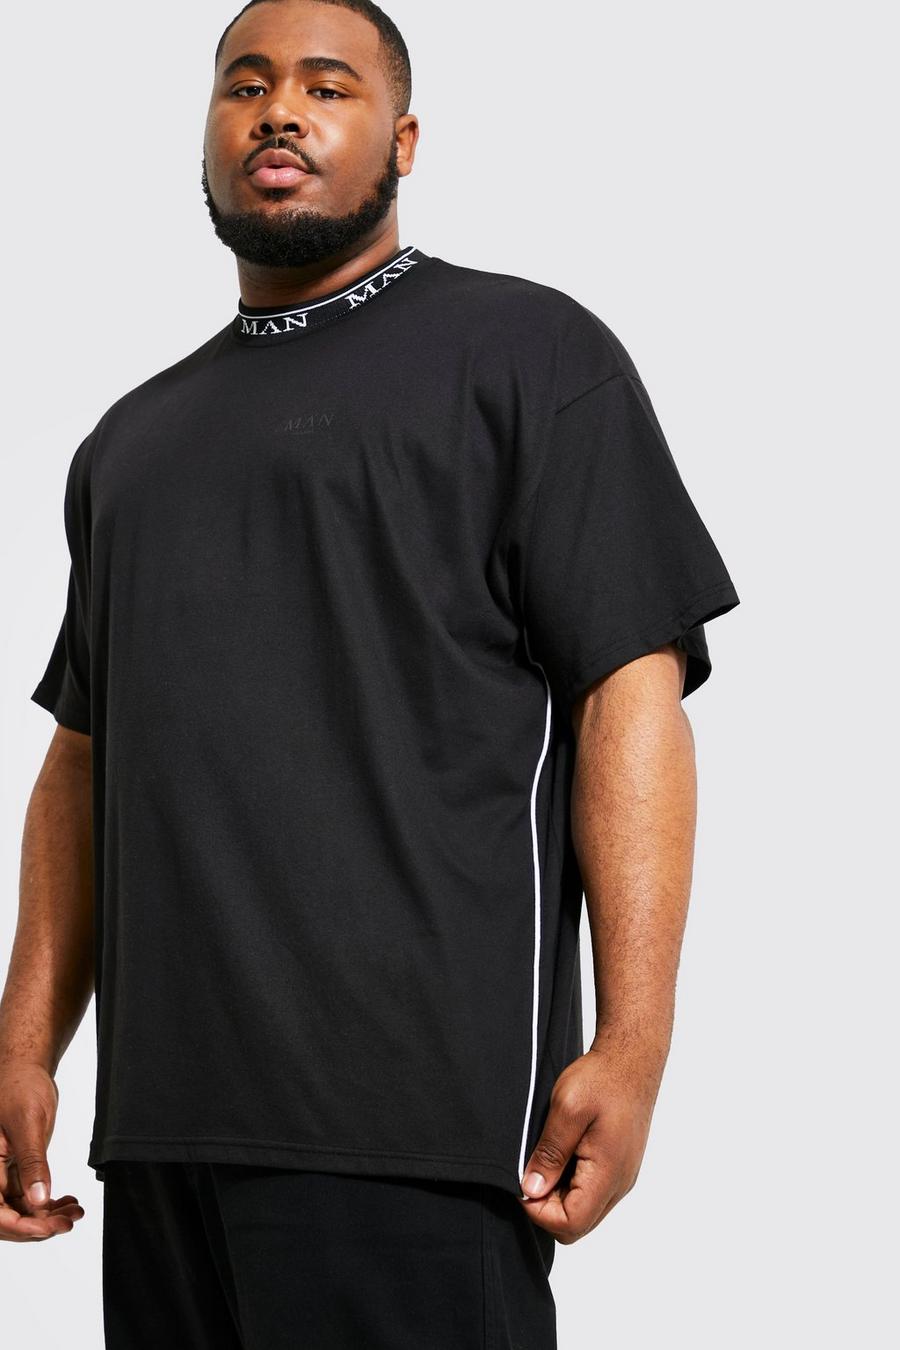 Black Plus Roman Man Rib Neck T-shirt